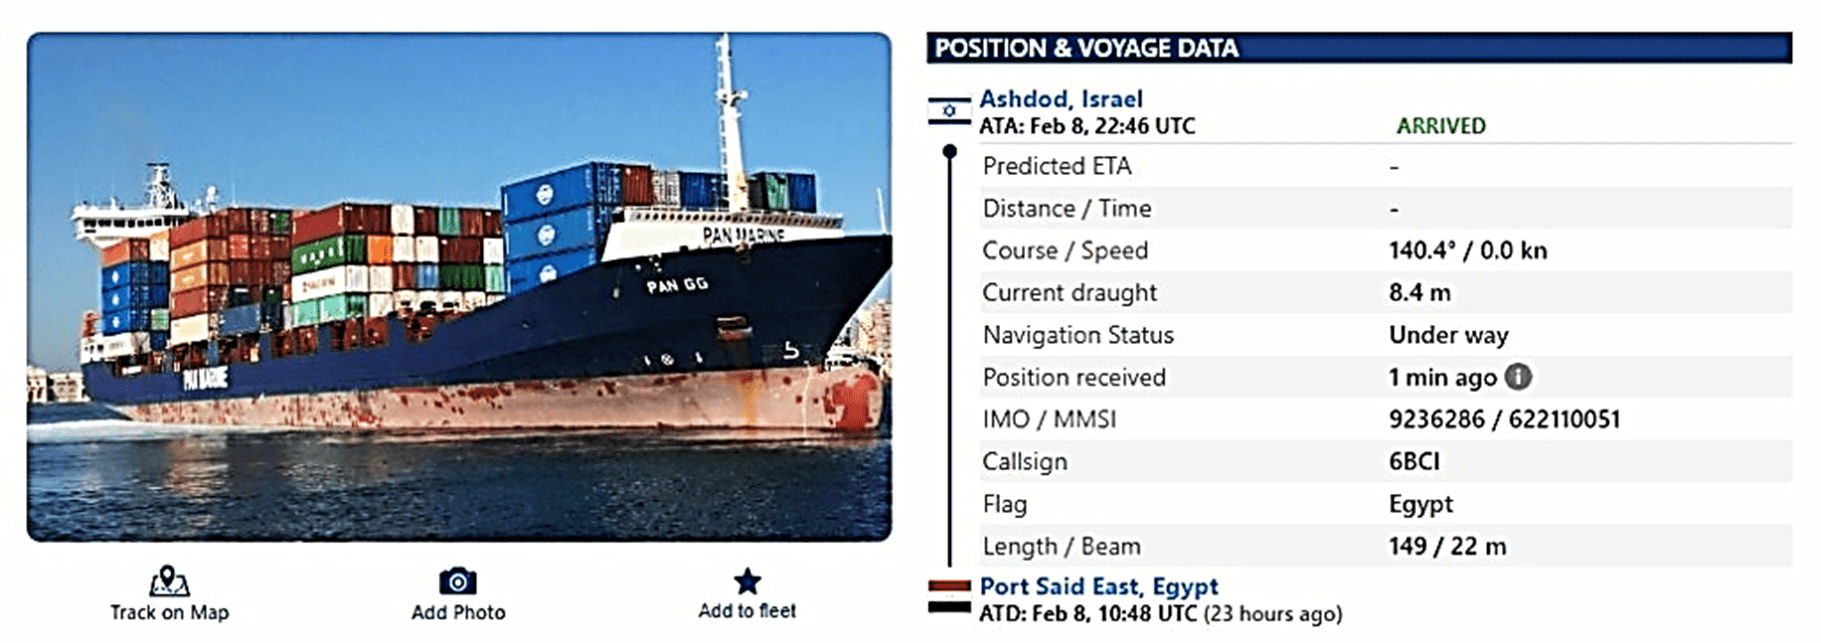 صورة توضح مواصفات سفينة الشحن المصرية التي تتوجه إلى ميناء رفح وأسدود في الأراضي الفلسطينية المحتلة.